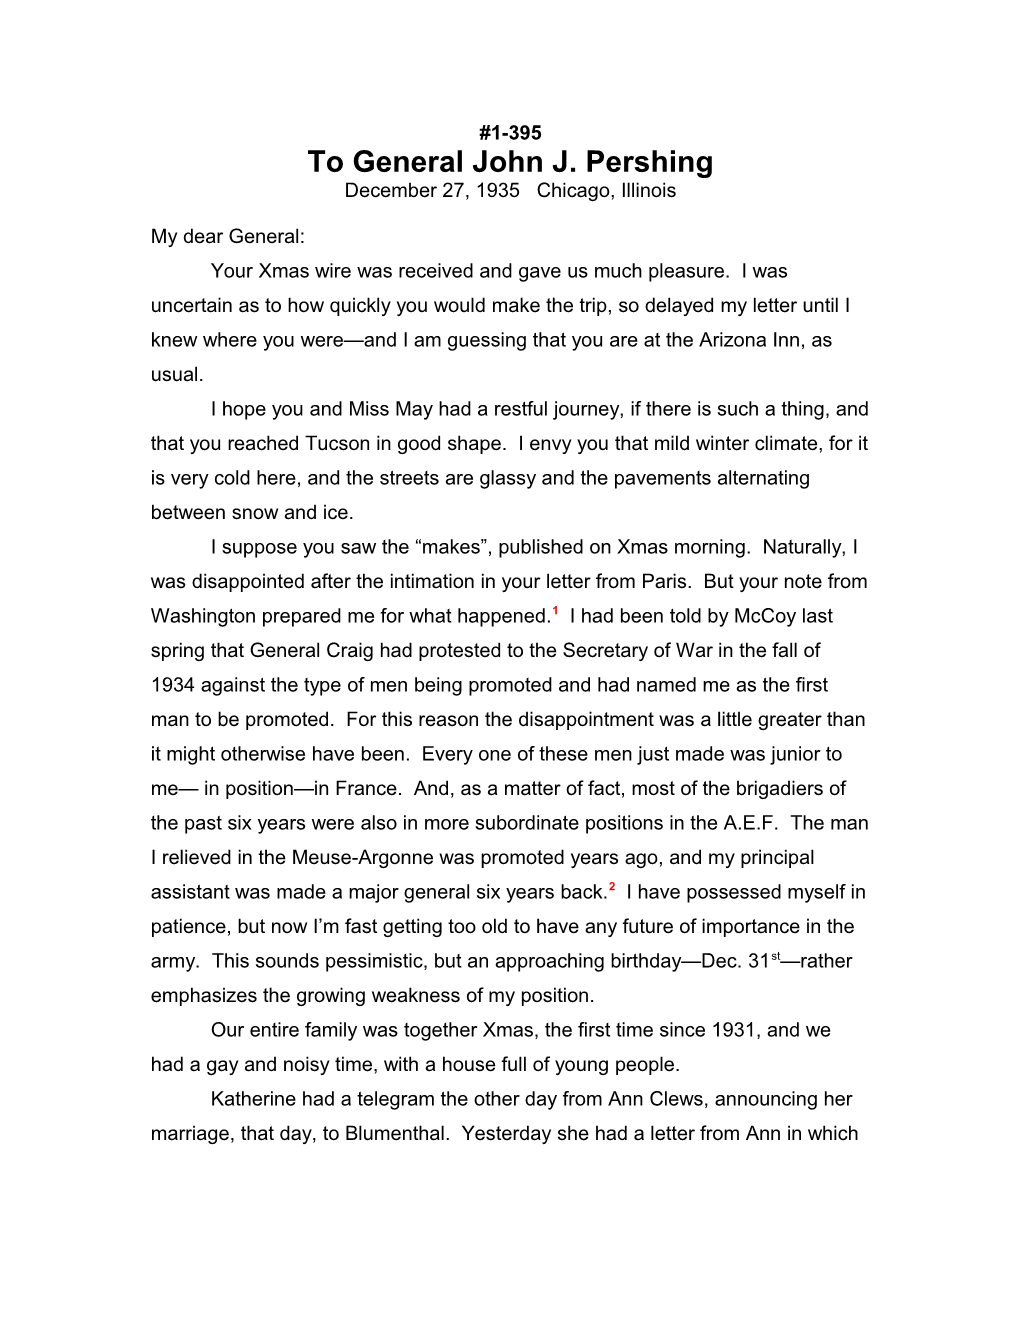 To General John J. Pershing s1